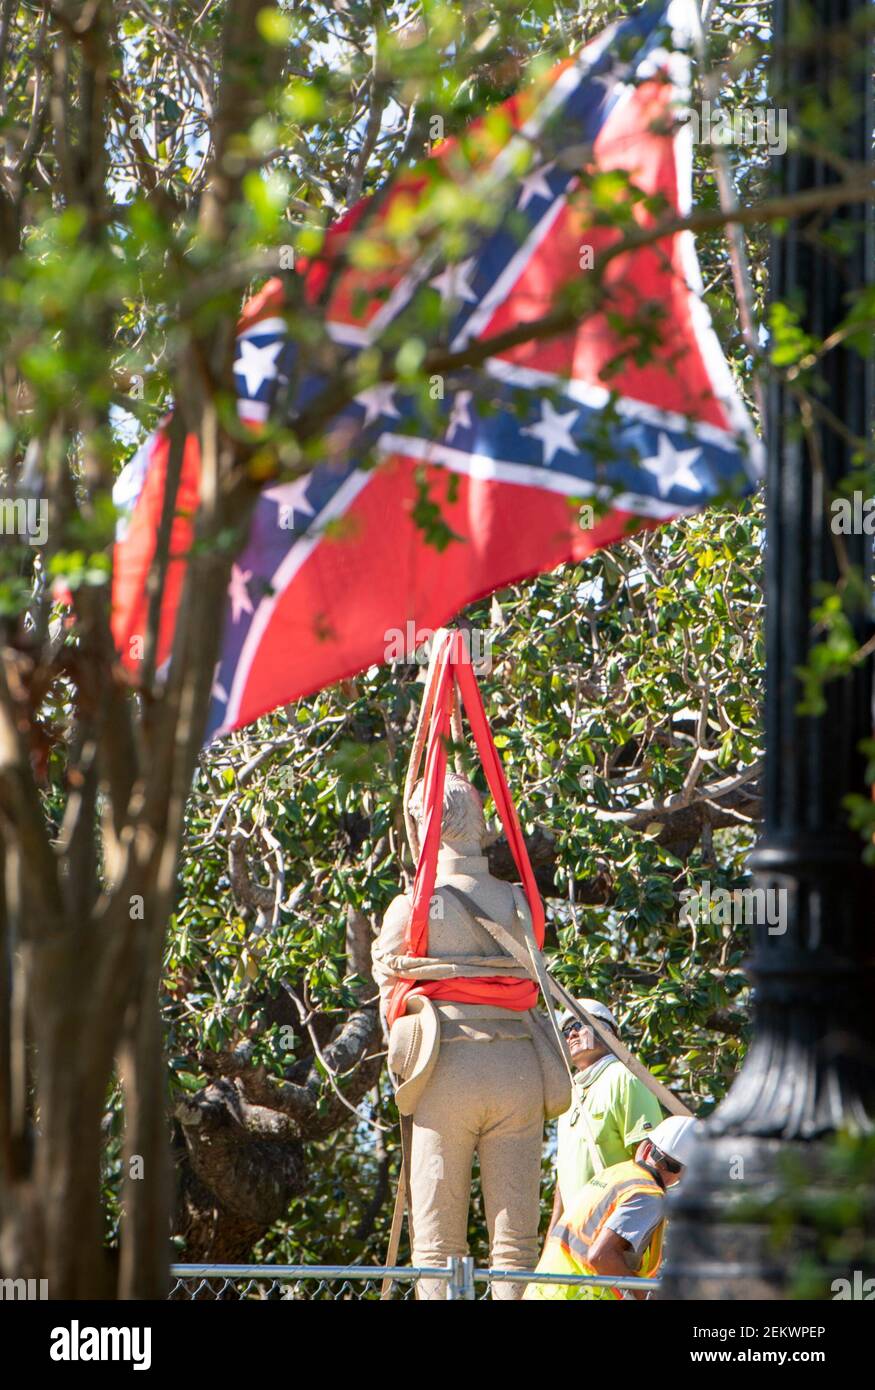 Los trabajadores sacan la estatua de la parte superior del monumento confederado en el centro de Pensacola el lunes, 26 de octubre de 2020. Retiro de la estatua confederada (Foto por Gregg Pachkowski/gregg@pnj.com/USA Today Network/Sipa USA) Foto de stock